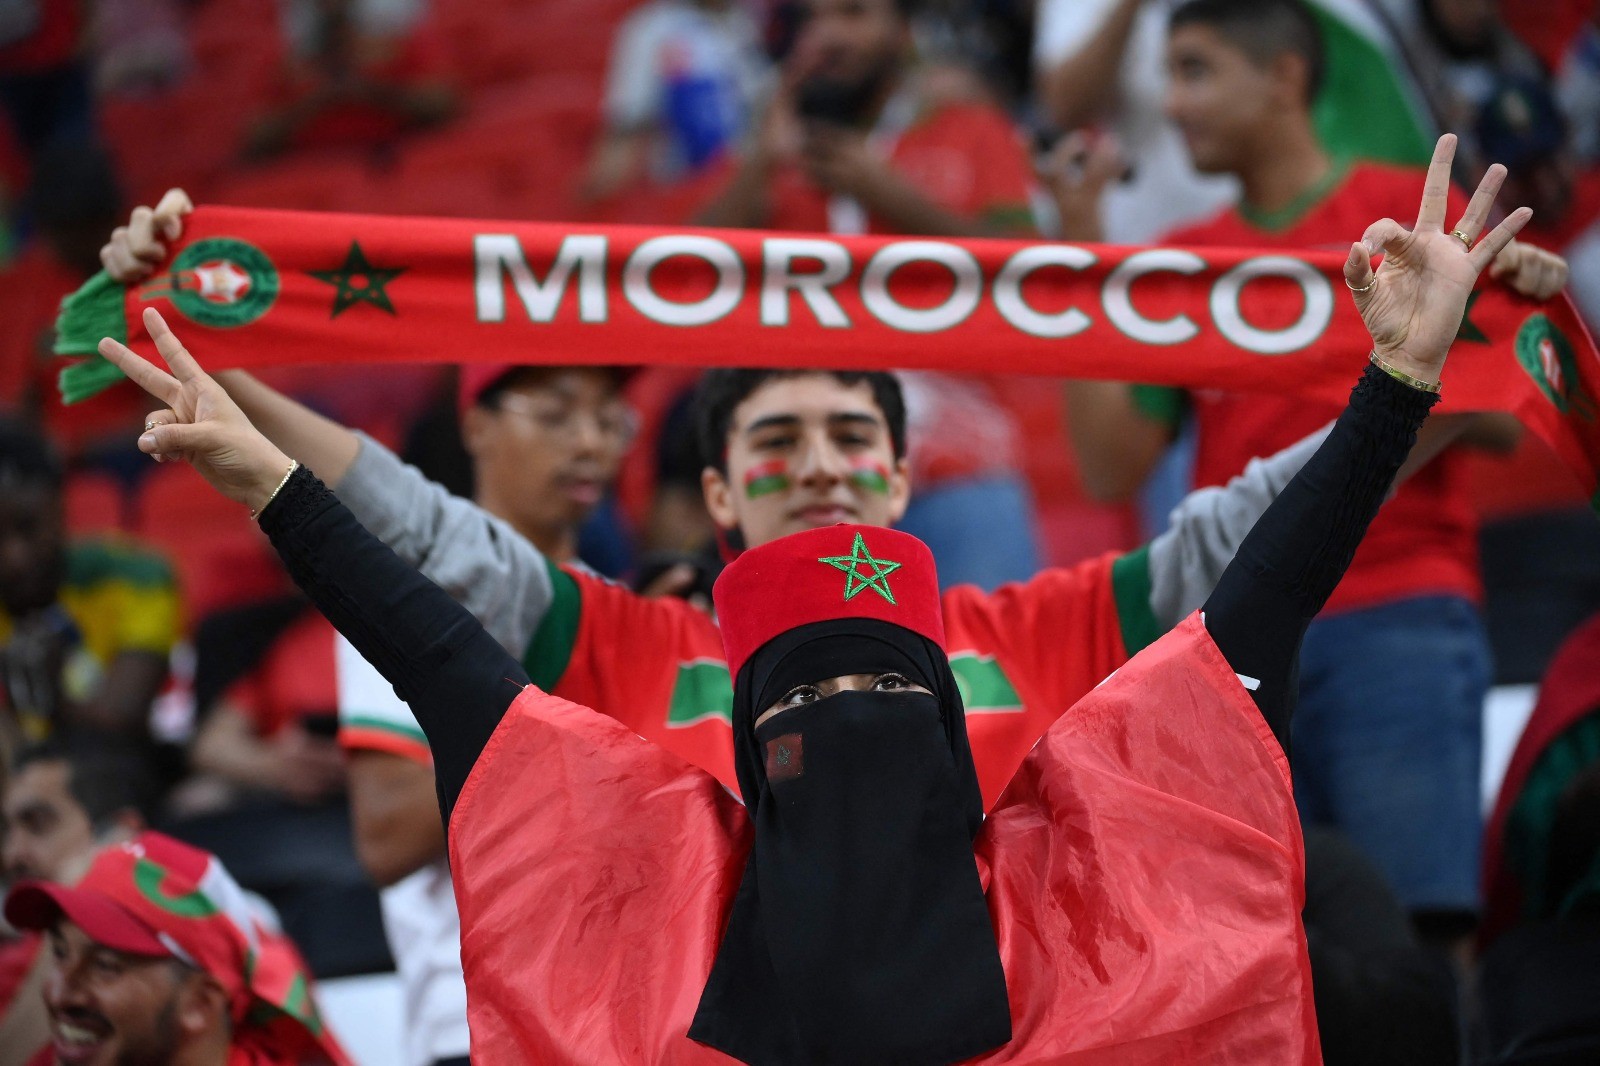 المغاربة يحتشدون في ملعب المباراة لتشجيع منتحبهم .. تصوير (الفرنسية) 2.jpg